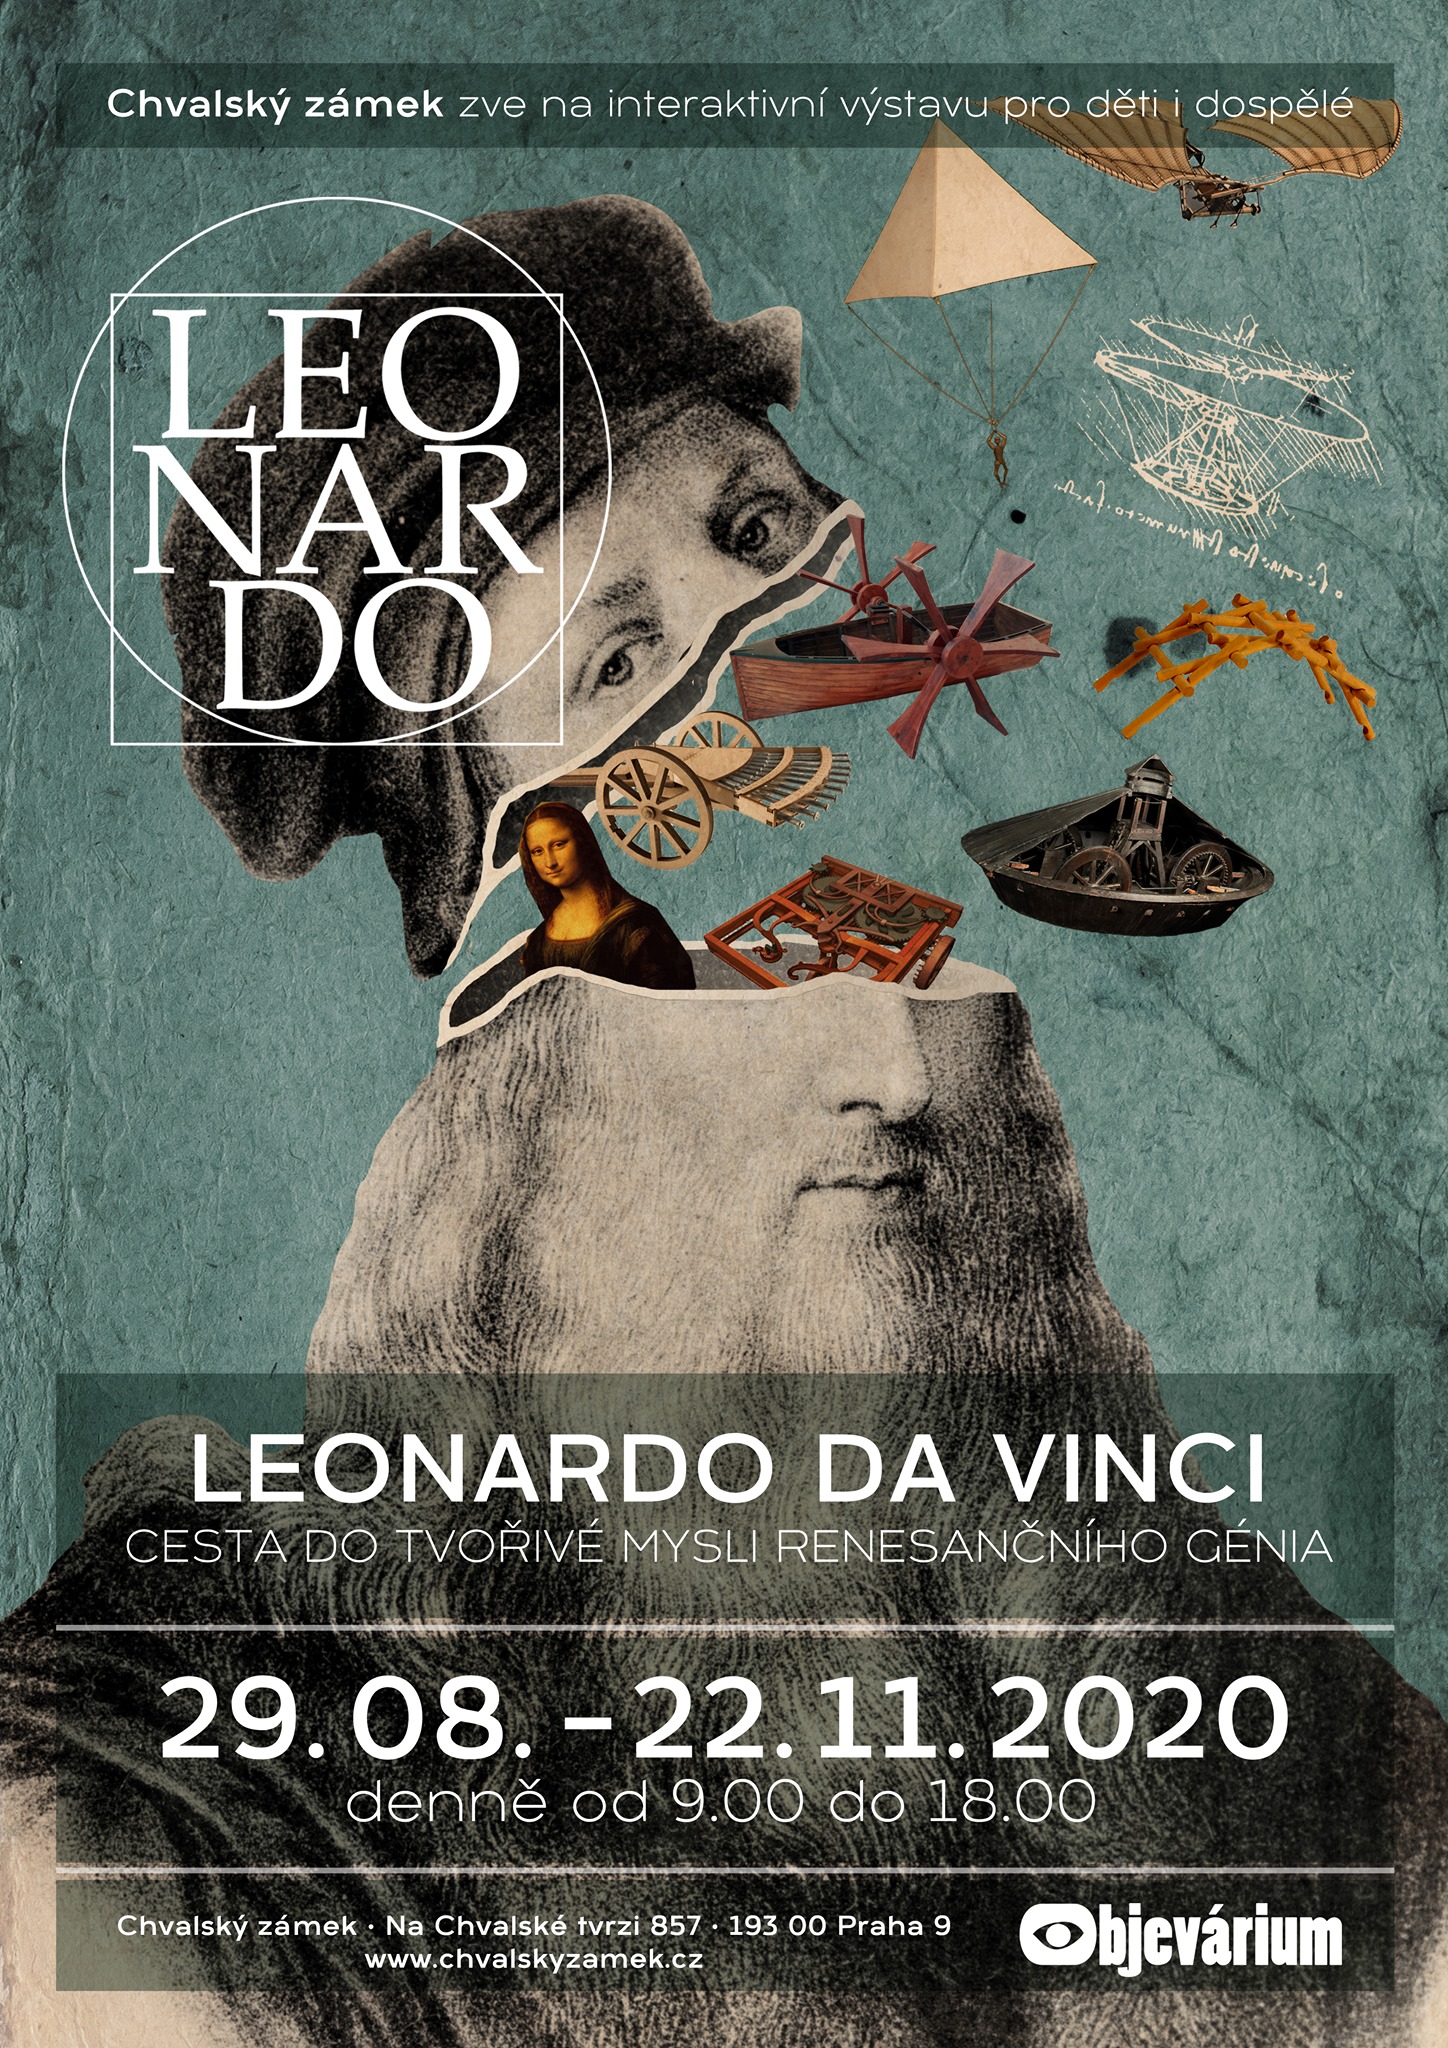 Leonardo – cesta do tvořivé mysli renesančního génia